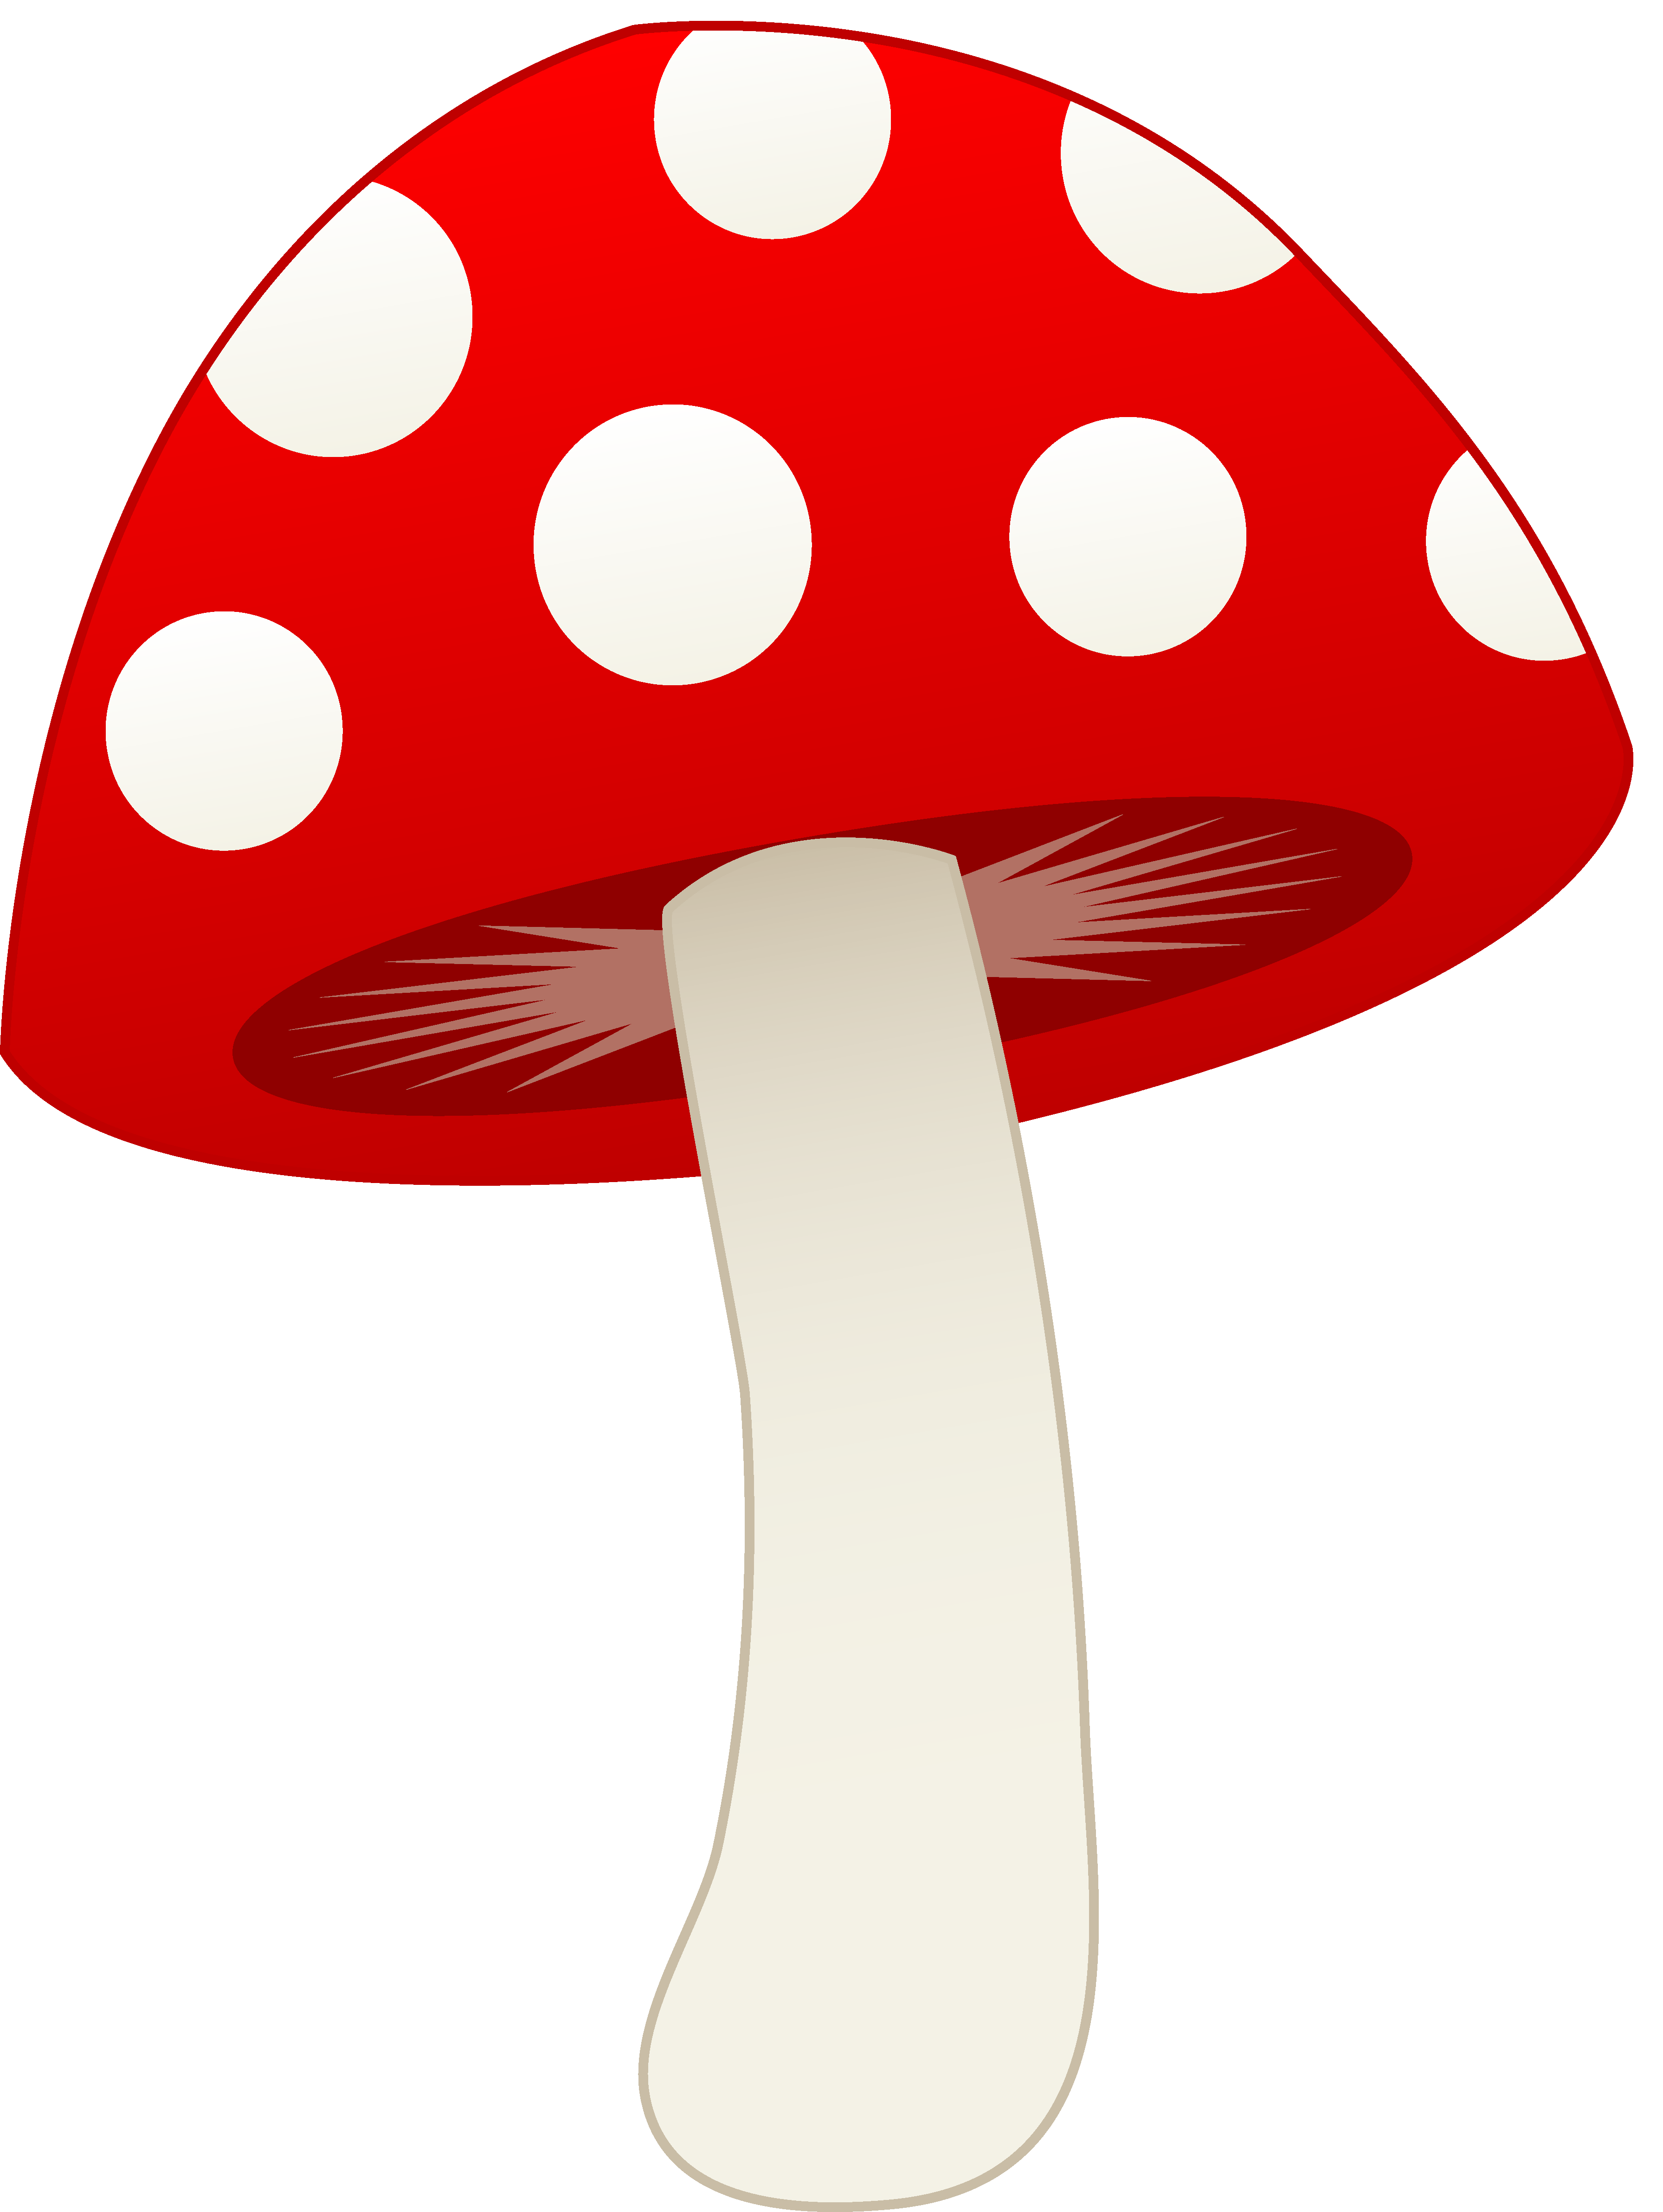 toadstool mushroom clipart - photo #1